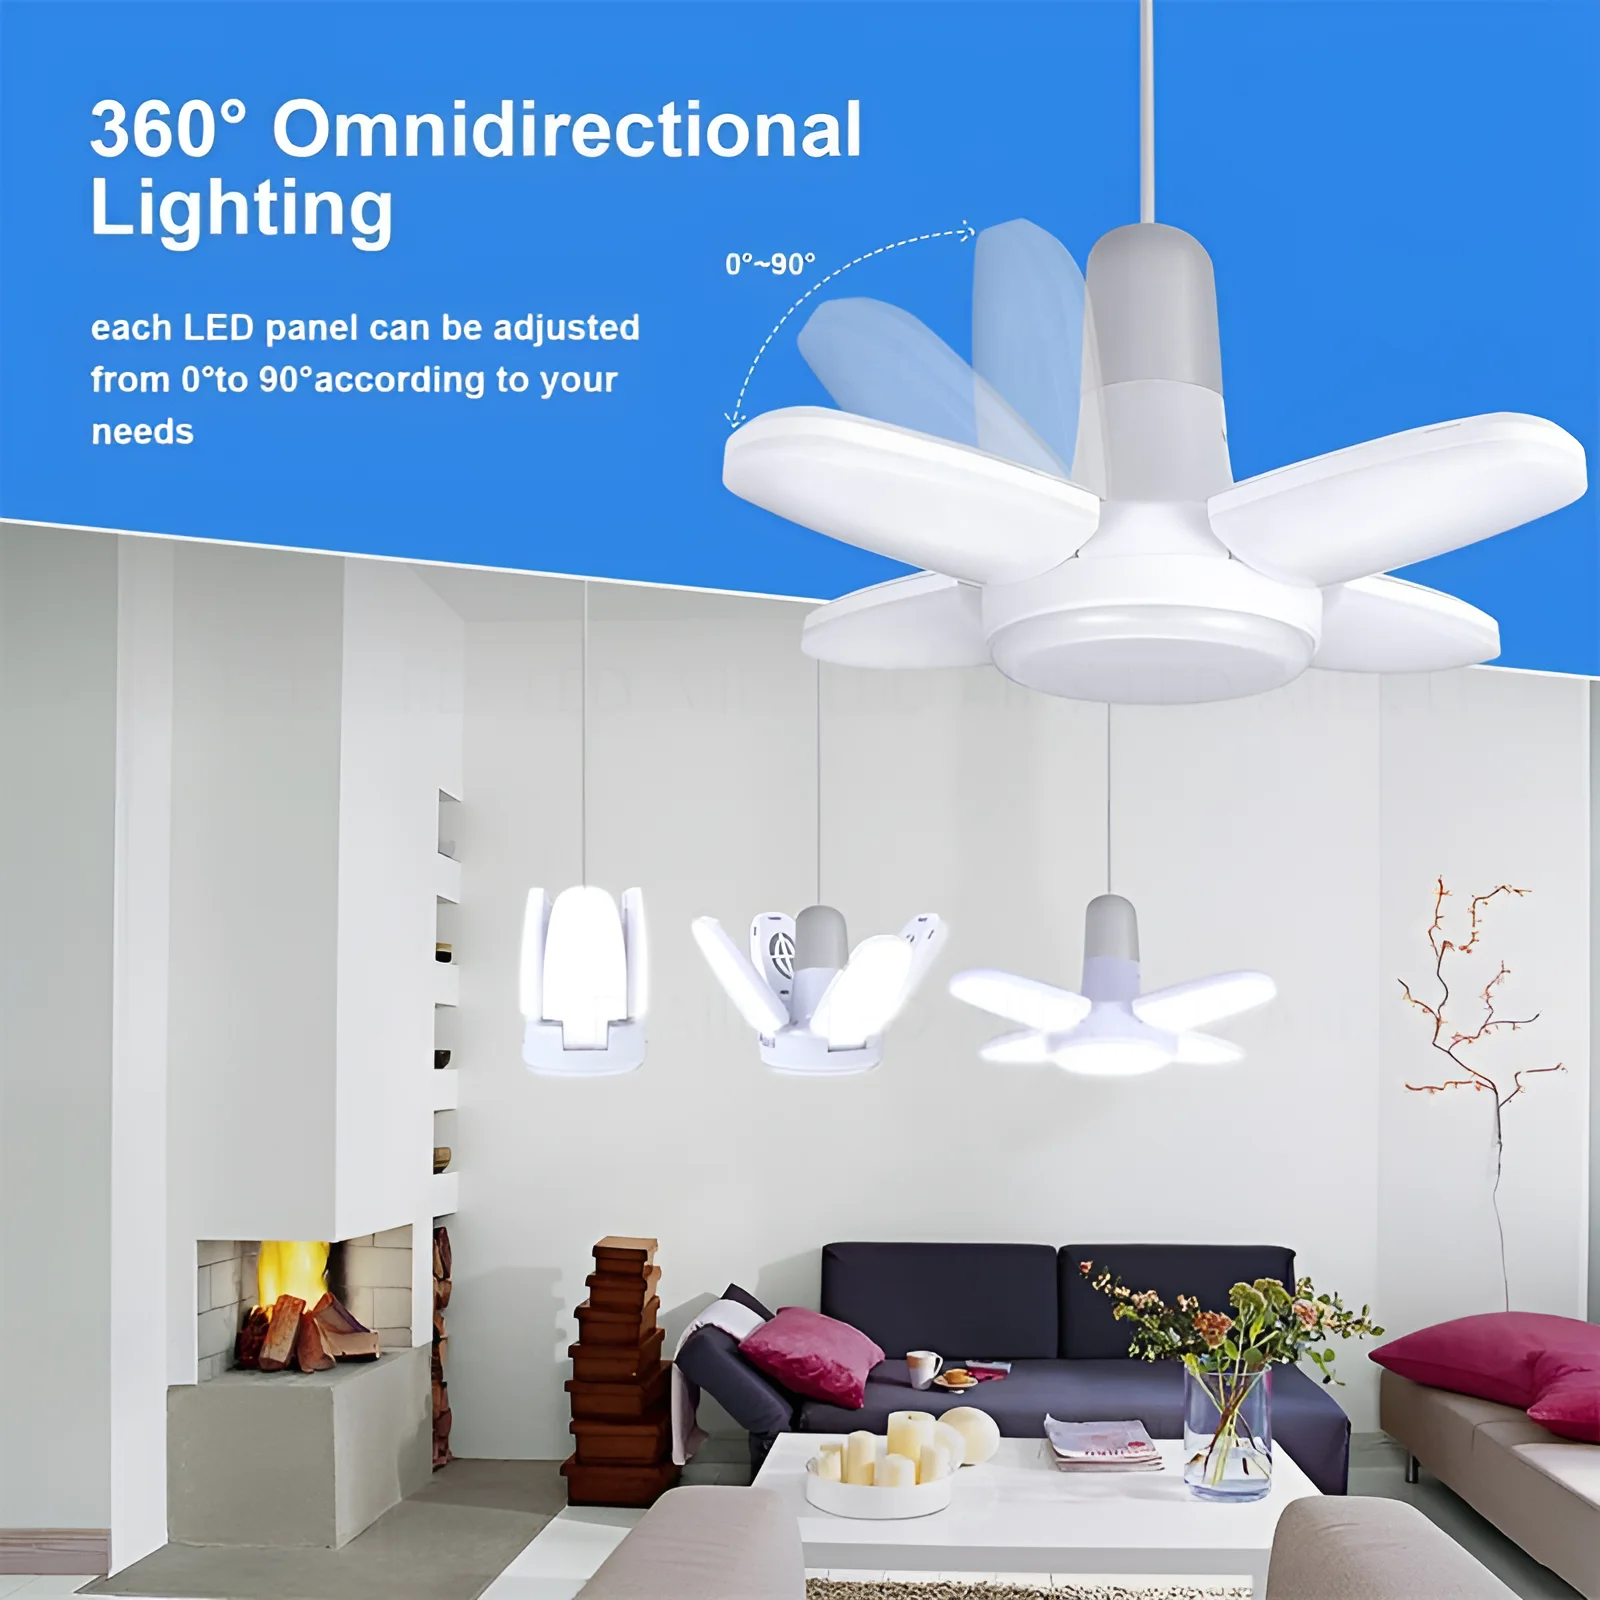 E27 LED Bulb Fan Blade Timing Lamp 220V 110V 28W 360°Foldable Led Industrial Light Bulb Lamp For Home Ceiling Light Garage Light images - 6